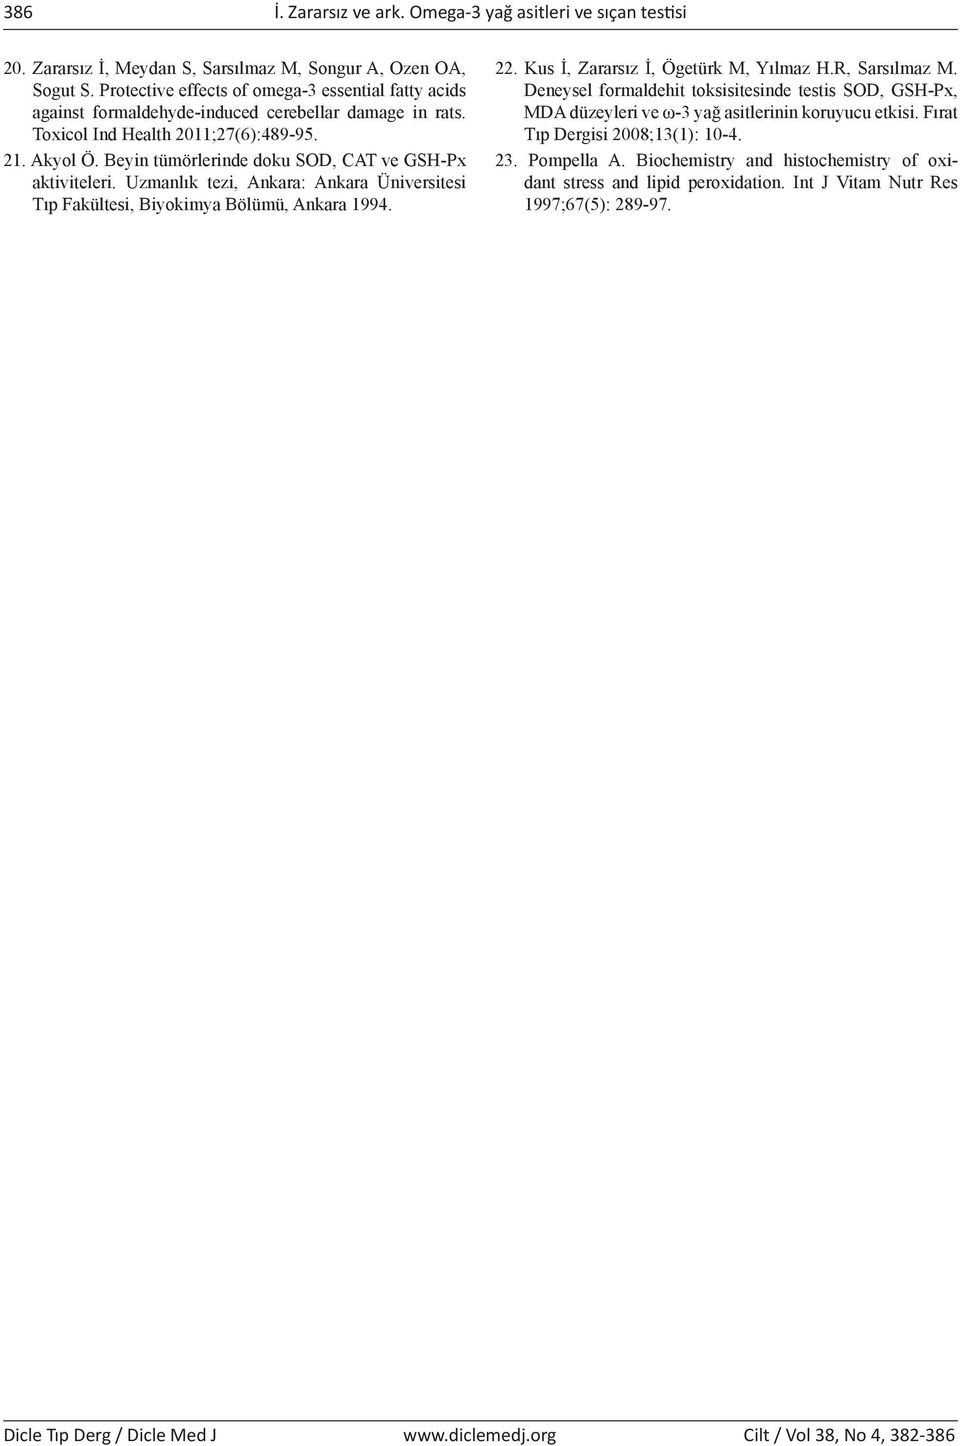 Beyin tümörlerinde doku SOD, CAT ve GSH-Px aktiviteleri. Uzmanlık tezi, Ankara: Ankara Üniversitesi Tıp Fakültesi, Biyokimya Bölümü, Ankara 1994. 22. Kus İ, Zararsız İ, Ögetürk M, Yılmaz H.